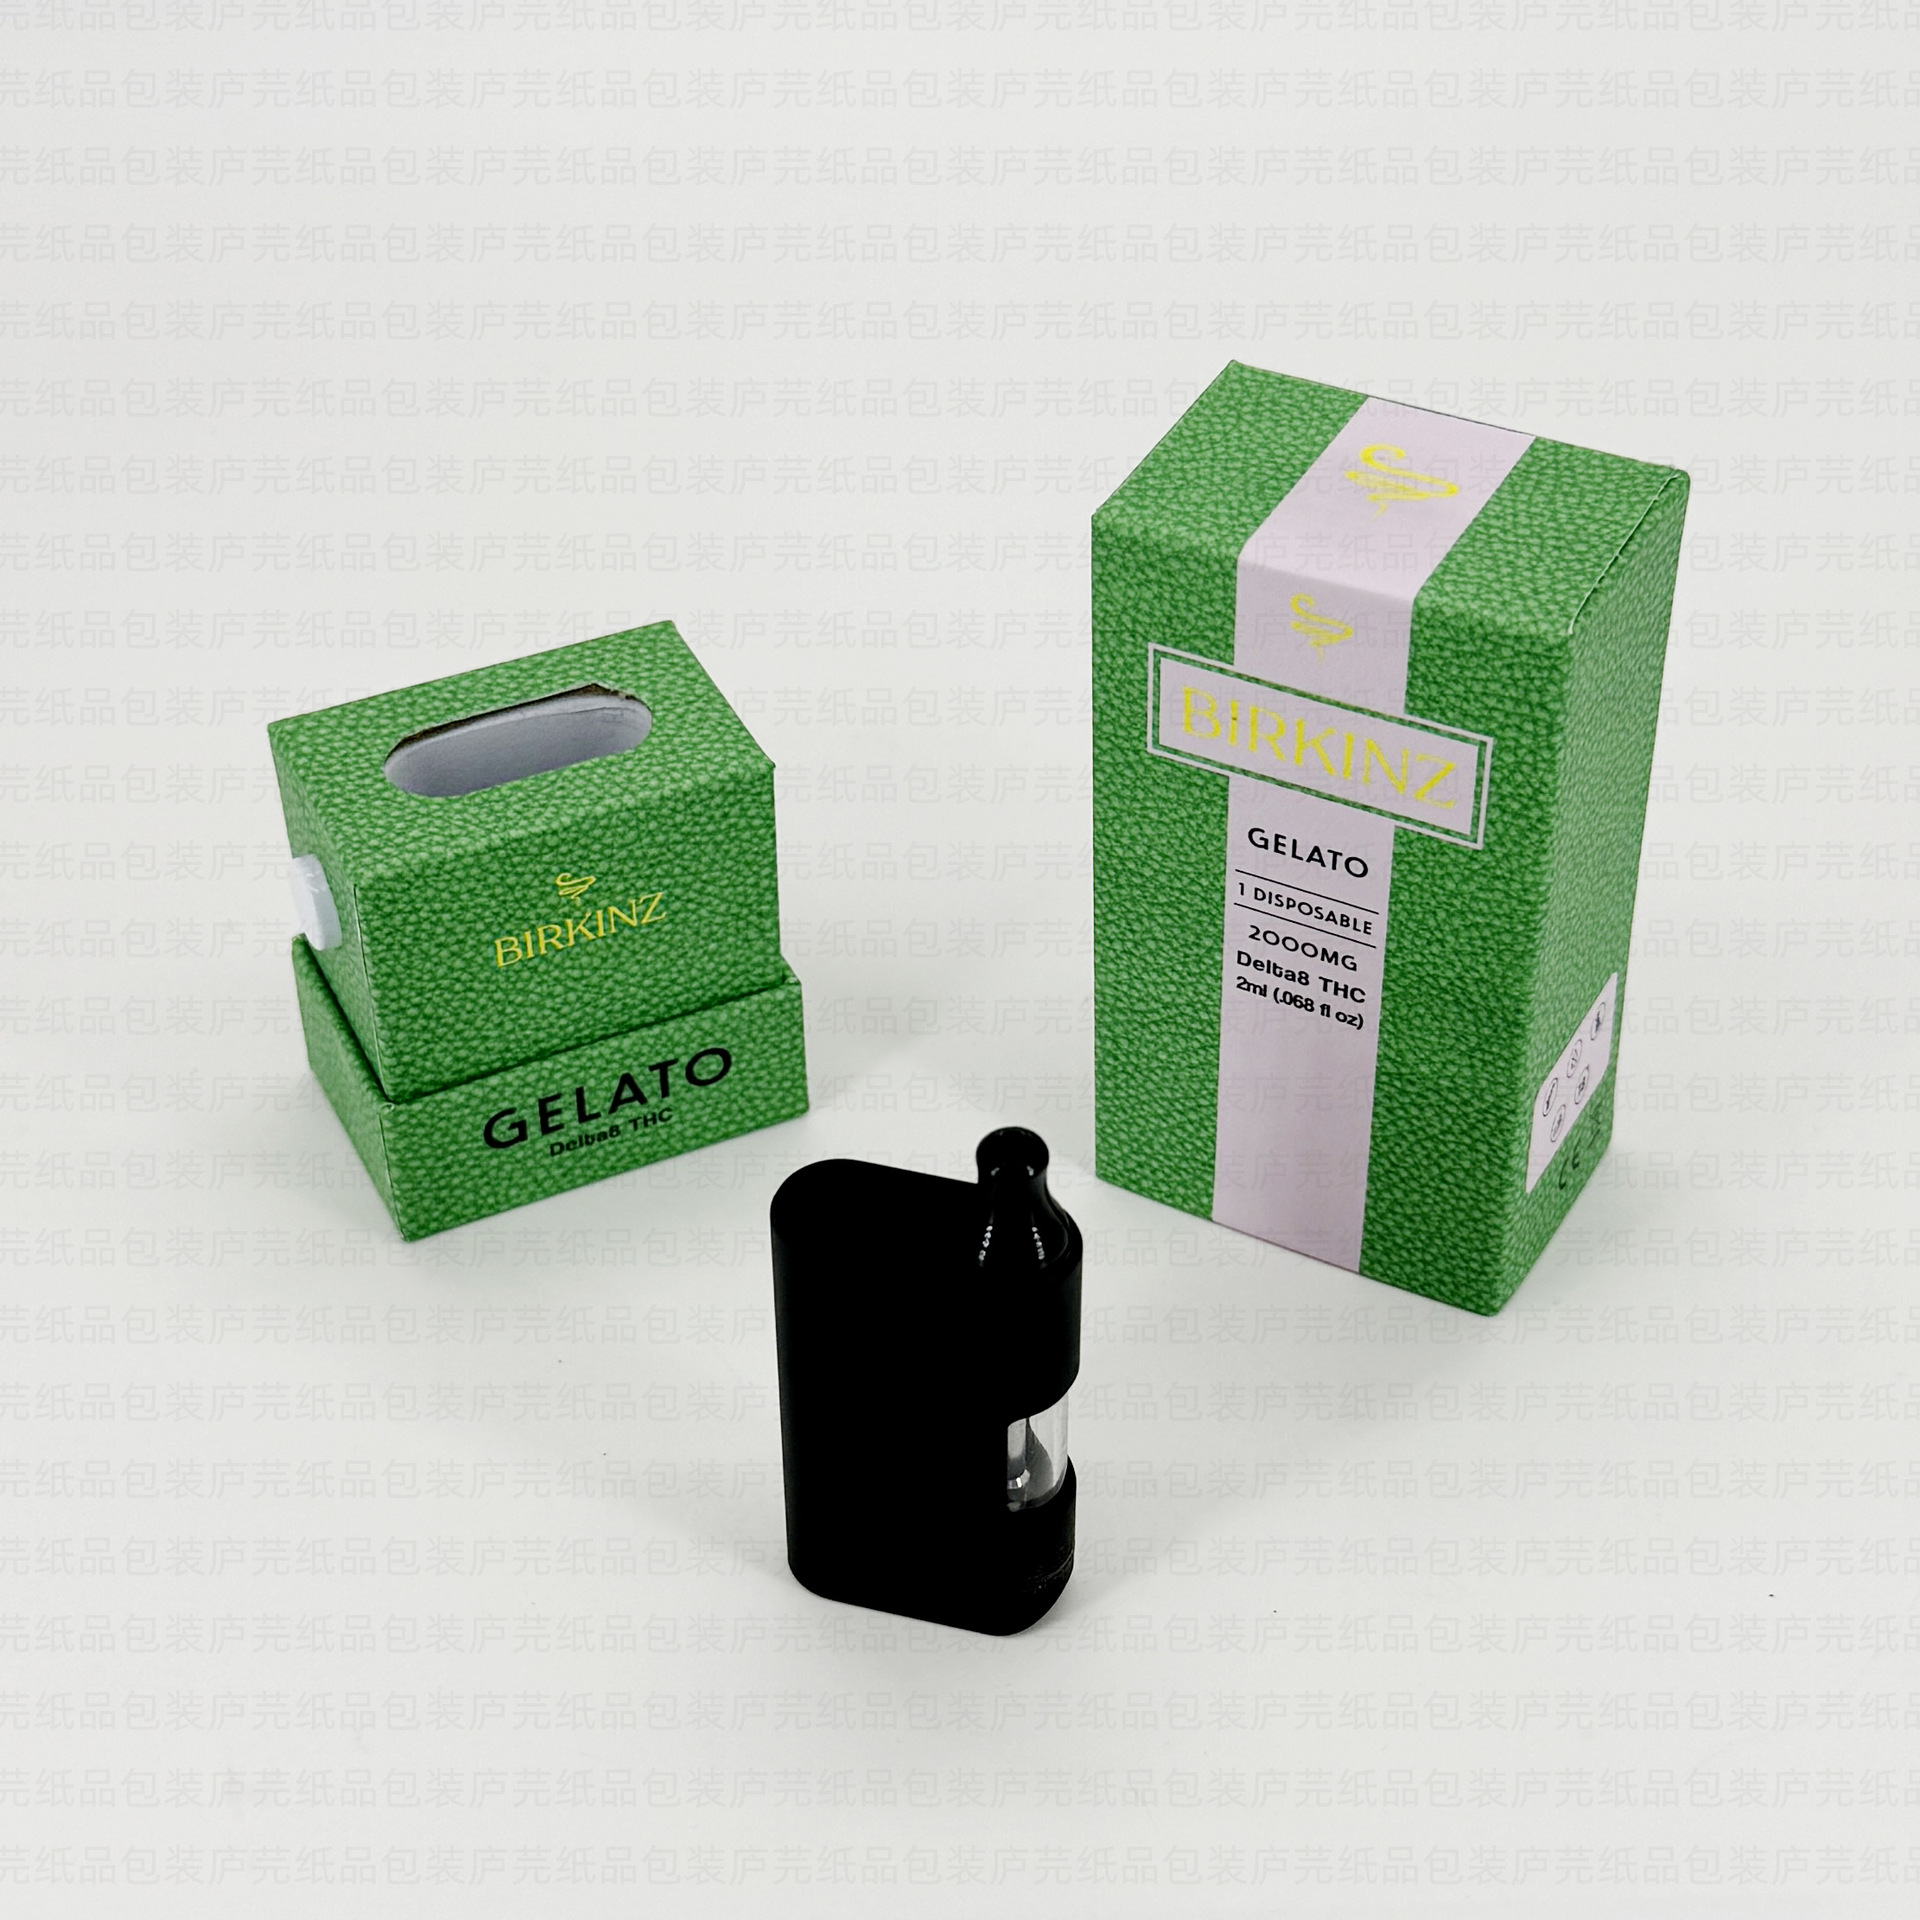 新款防儿童锁包装盒定制 三合一雾化器展示盒印刷CBD烟杆包装盒定